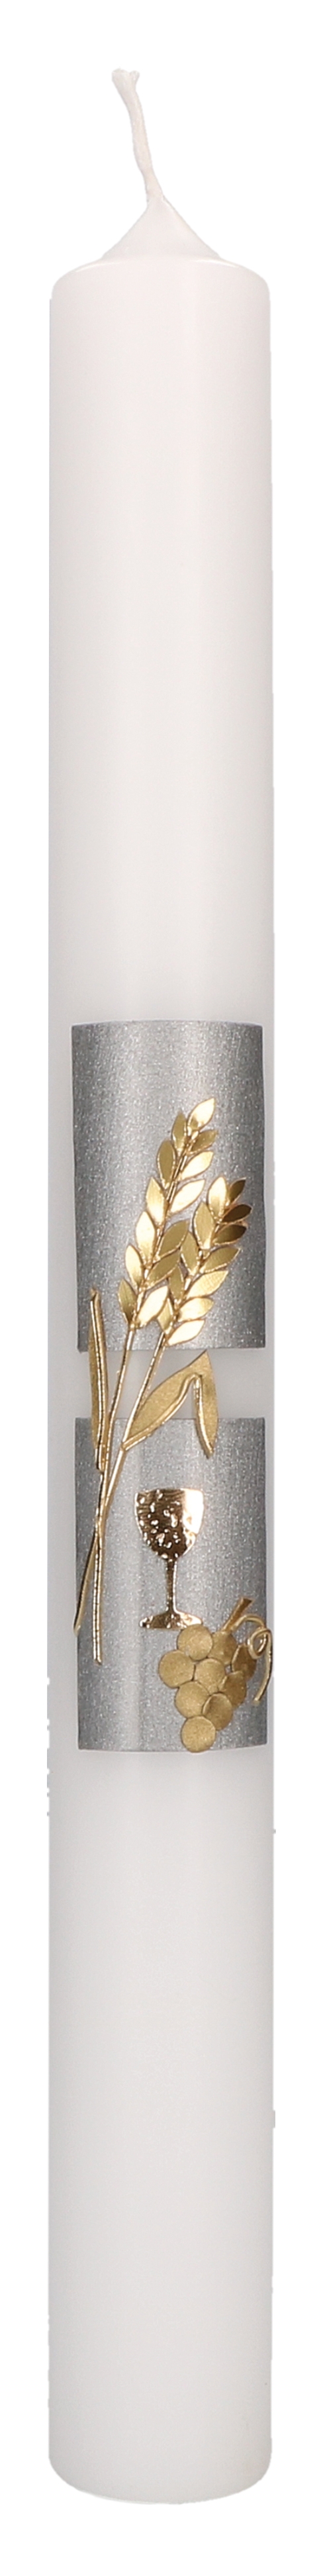 Kommunionkerze mit Wachsmotiv - Kelch, Ähren und Trauben in Gold auf silbernem Hintergrund - Cover